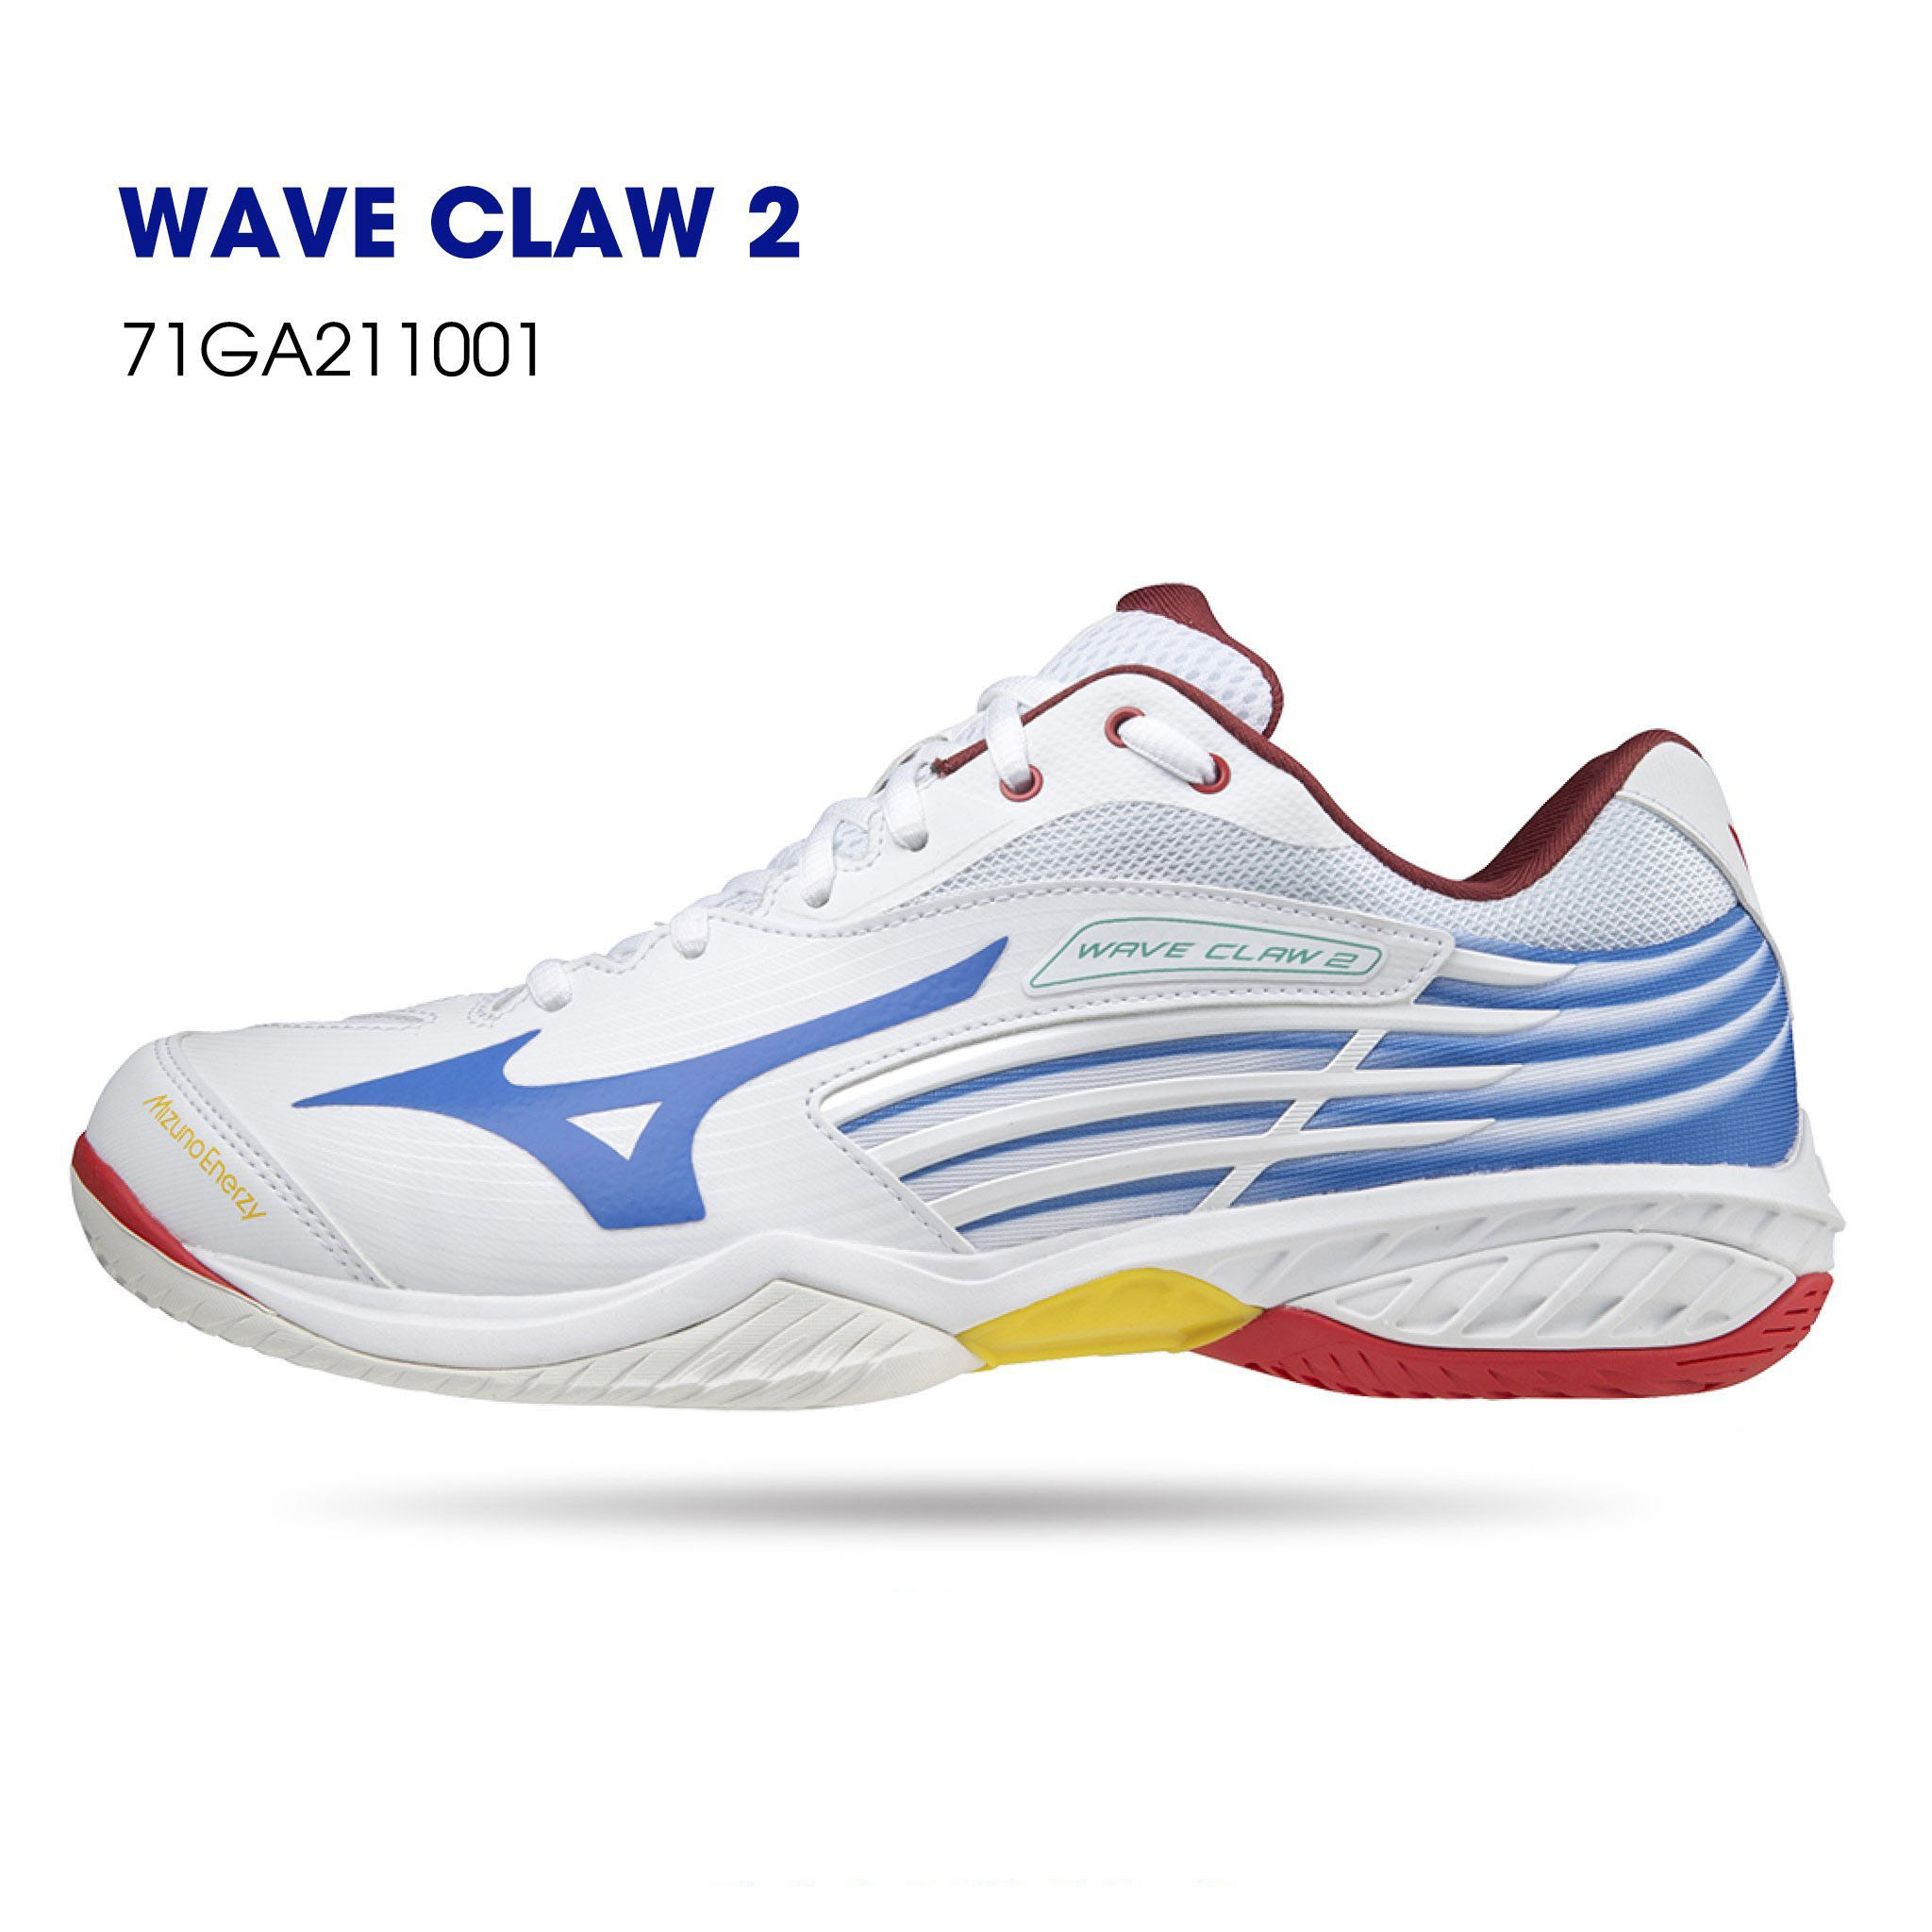 Giày cầu lông Mizuno nam chính hãng WAVE CLAW 2 mẫu mới có 2 màu lựa chọn